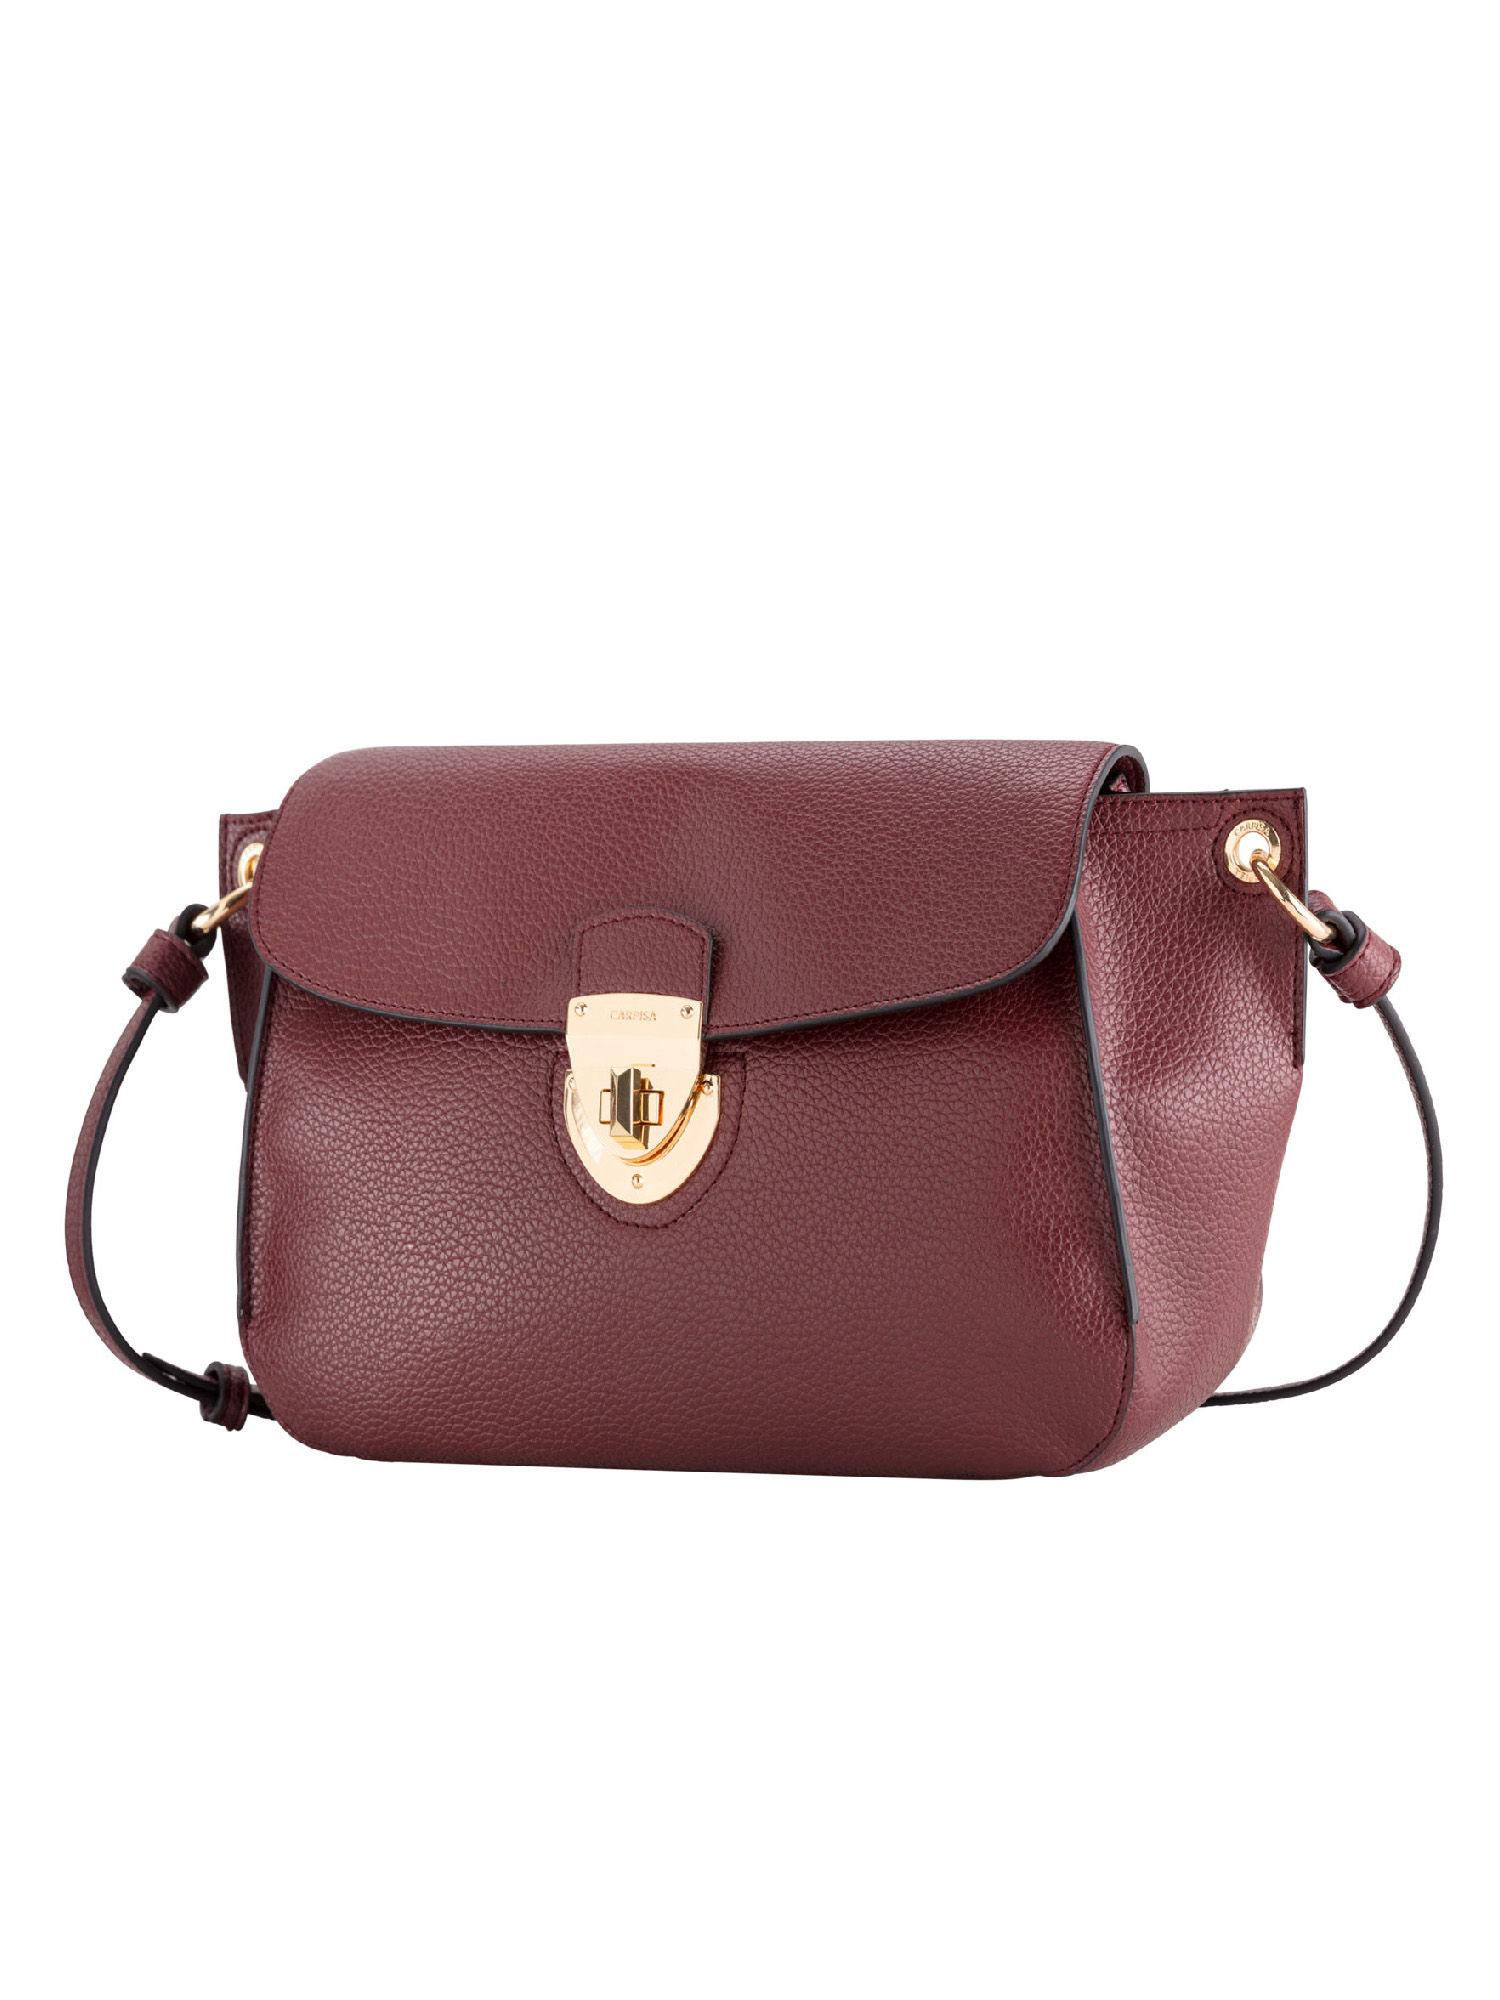 flap bag- wish maroon handbags